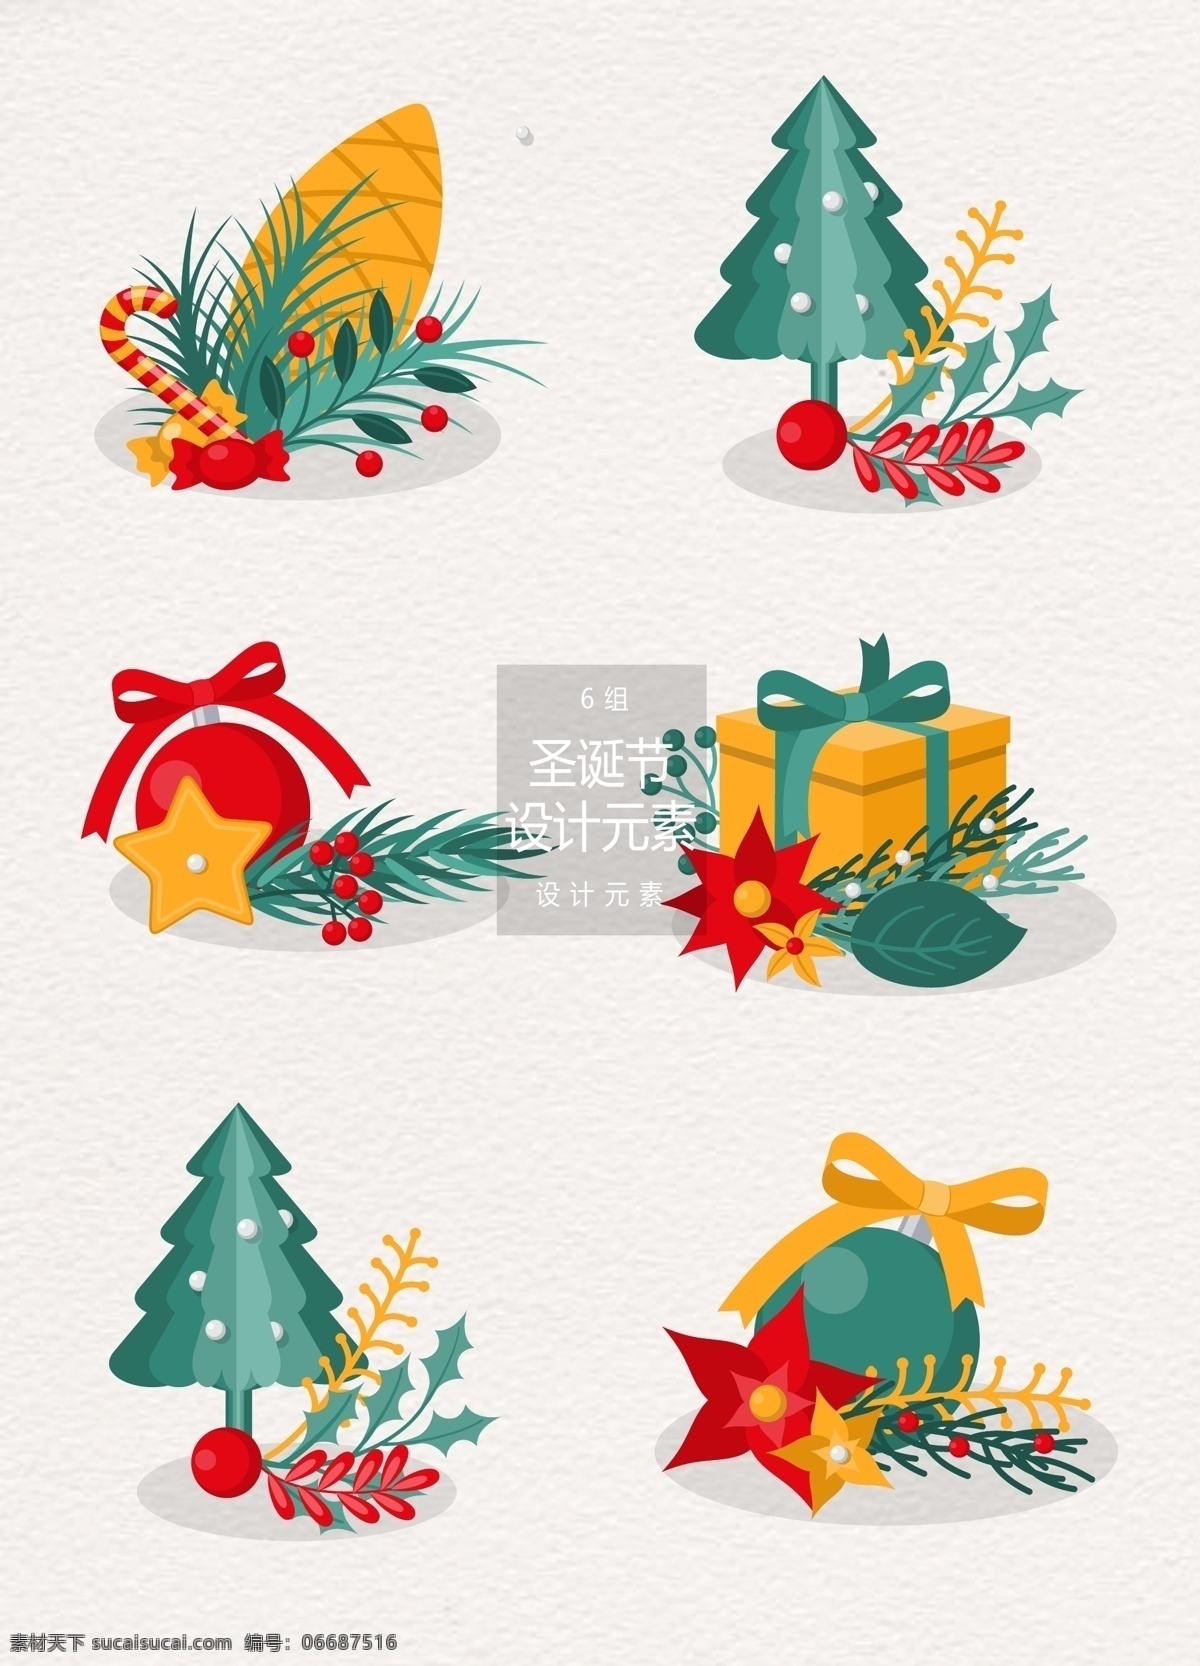 圣诞节 饰品 装饰设计 元素 叶子 圣诞树 礼物盒 礼物 圣诞节元素 设计元素 圣诞